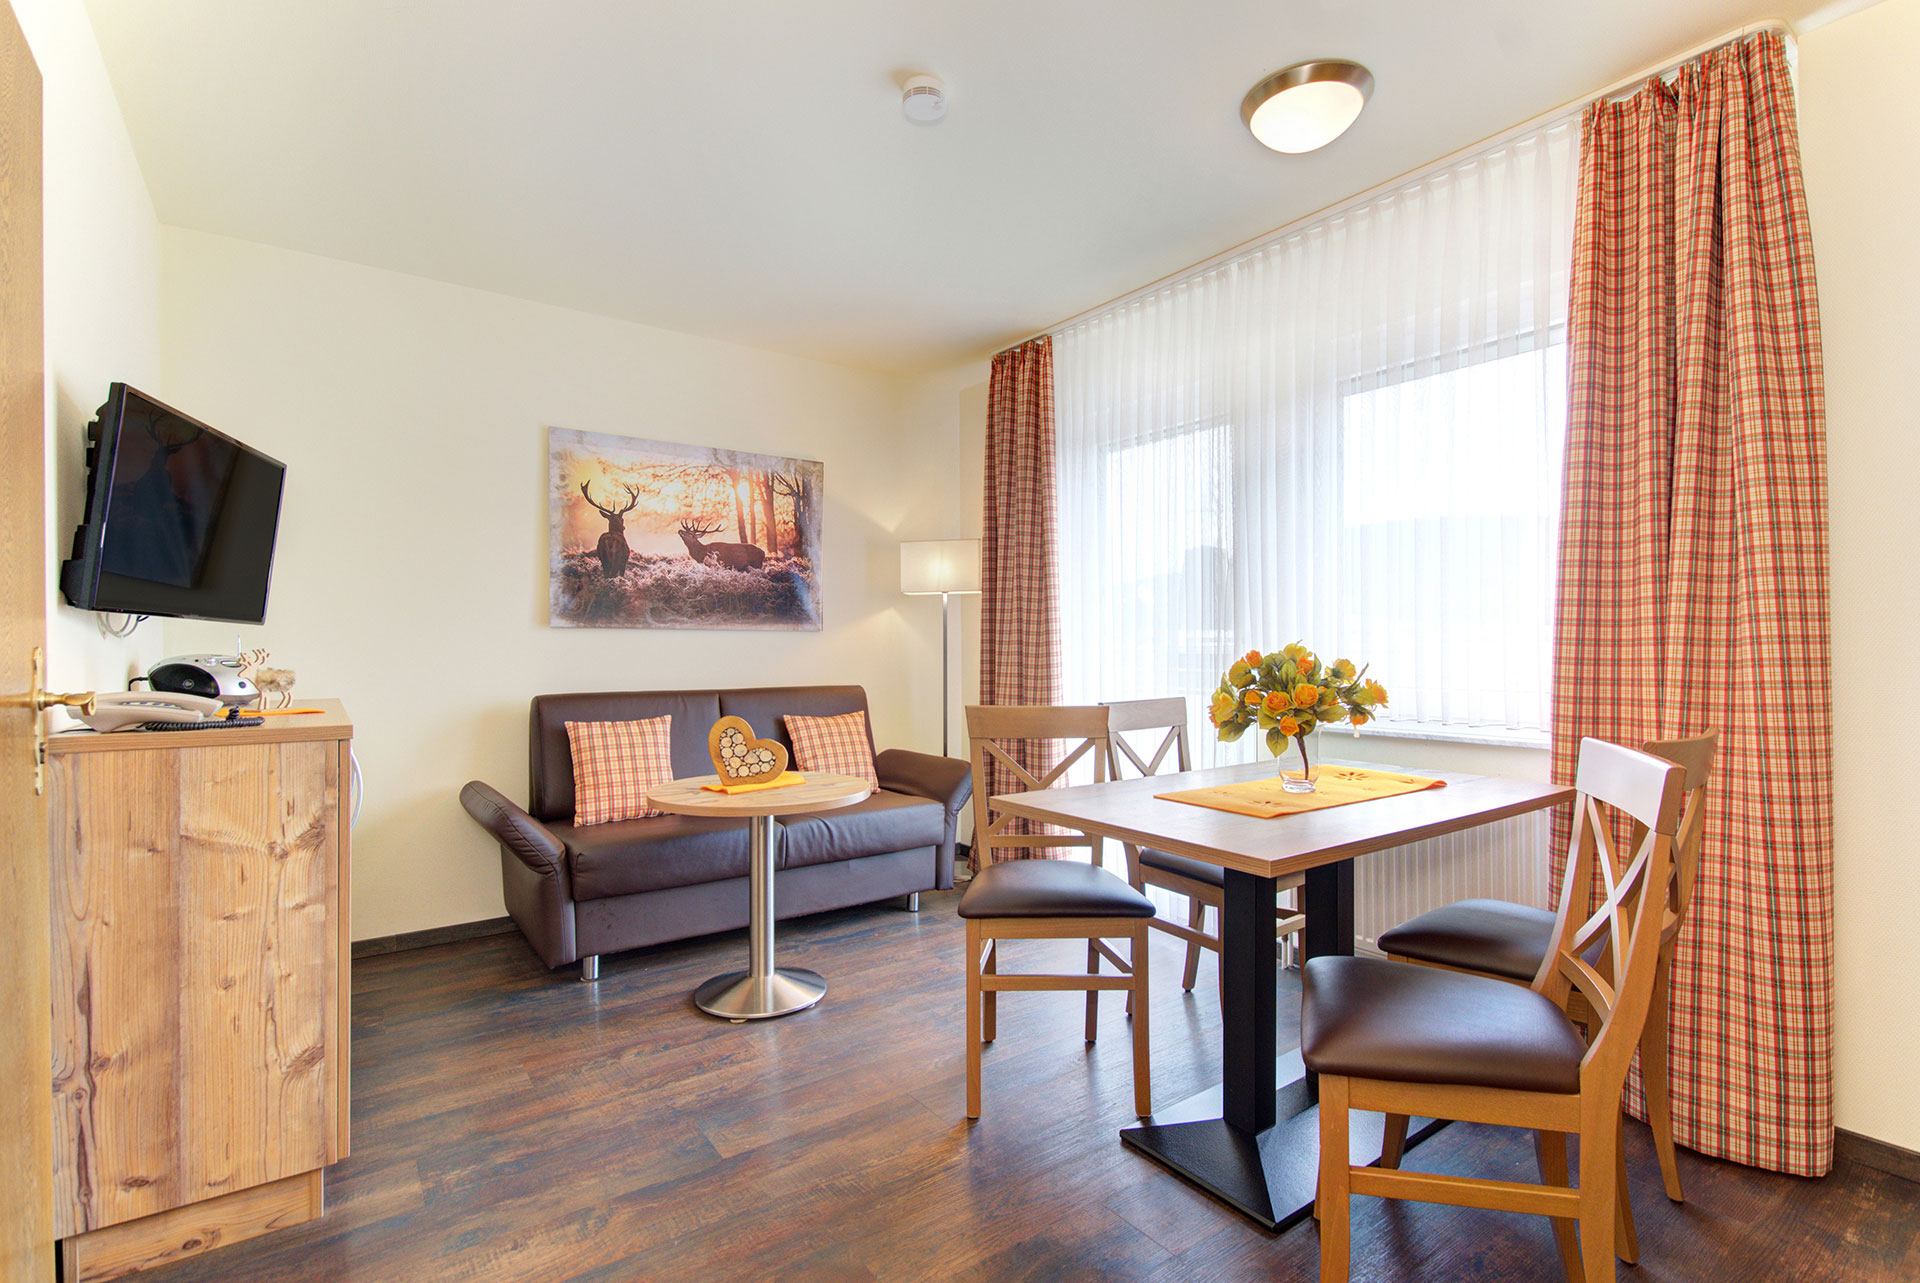 foto ferienwohnung essbereich mit blick auf esstisch mit vier stuehlen und organgefarbenem blumenstrauss